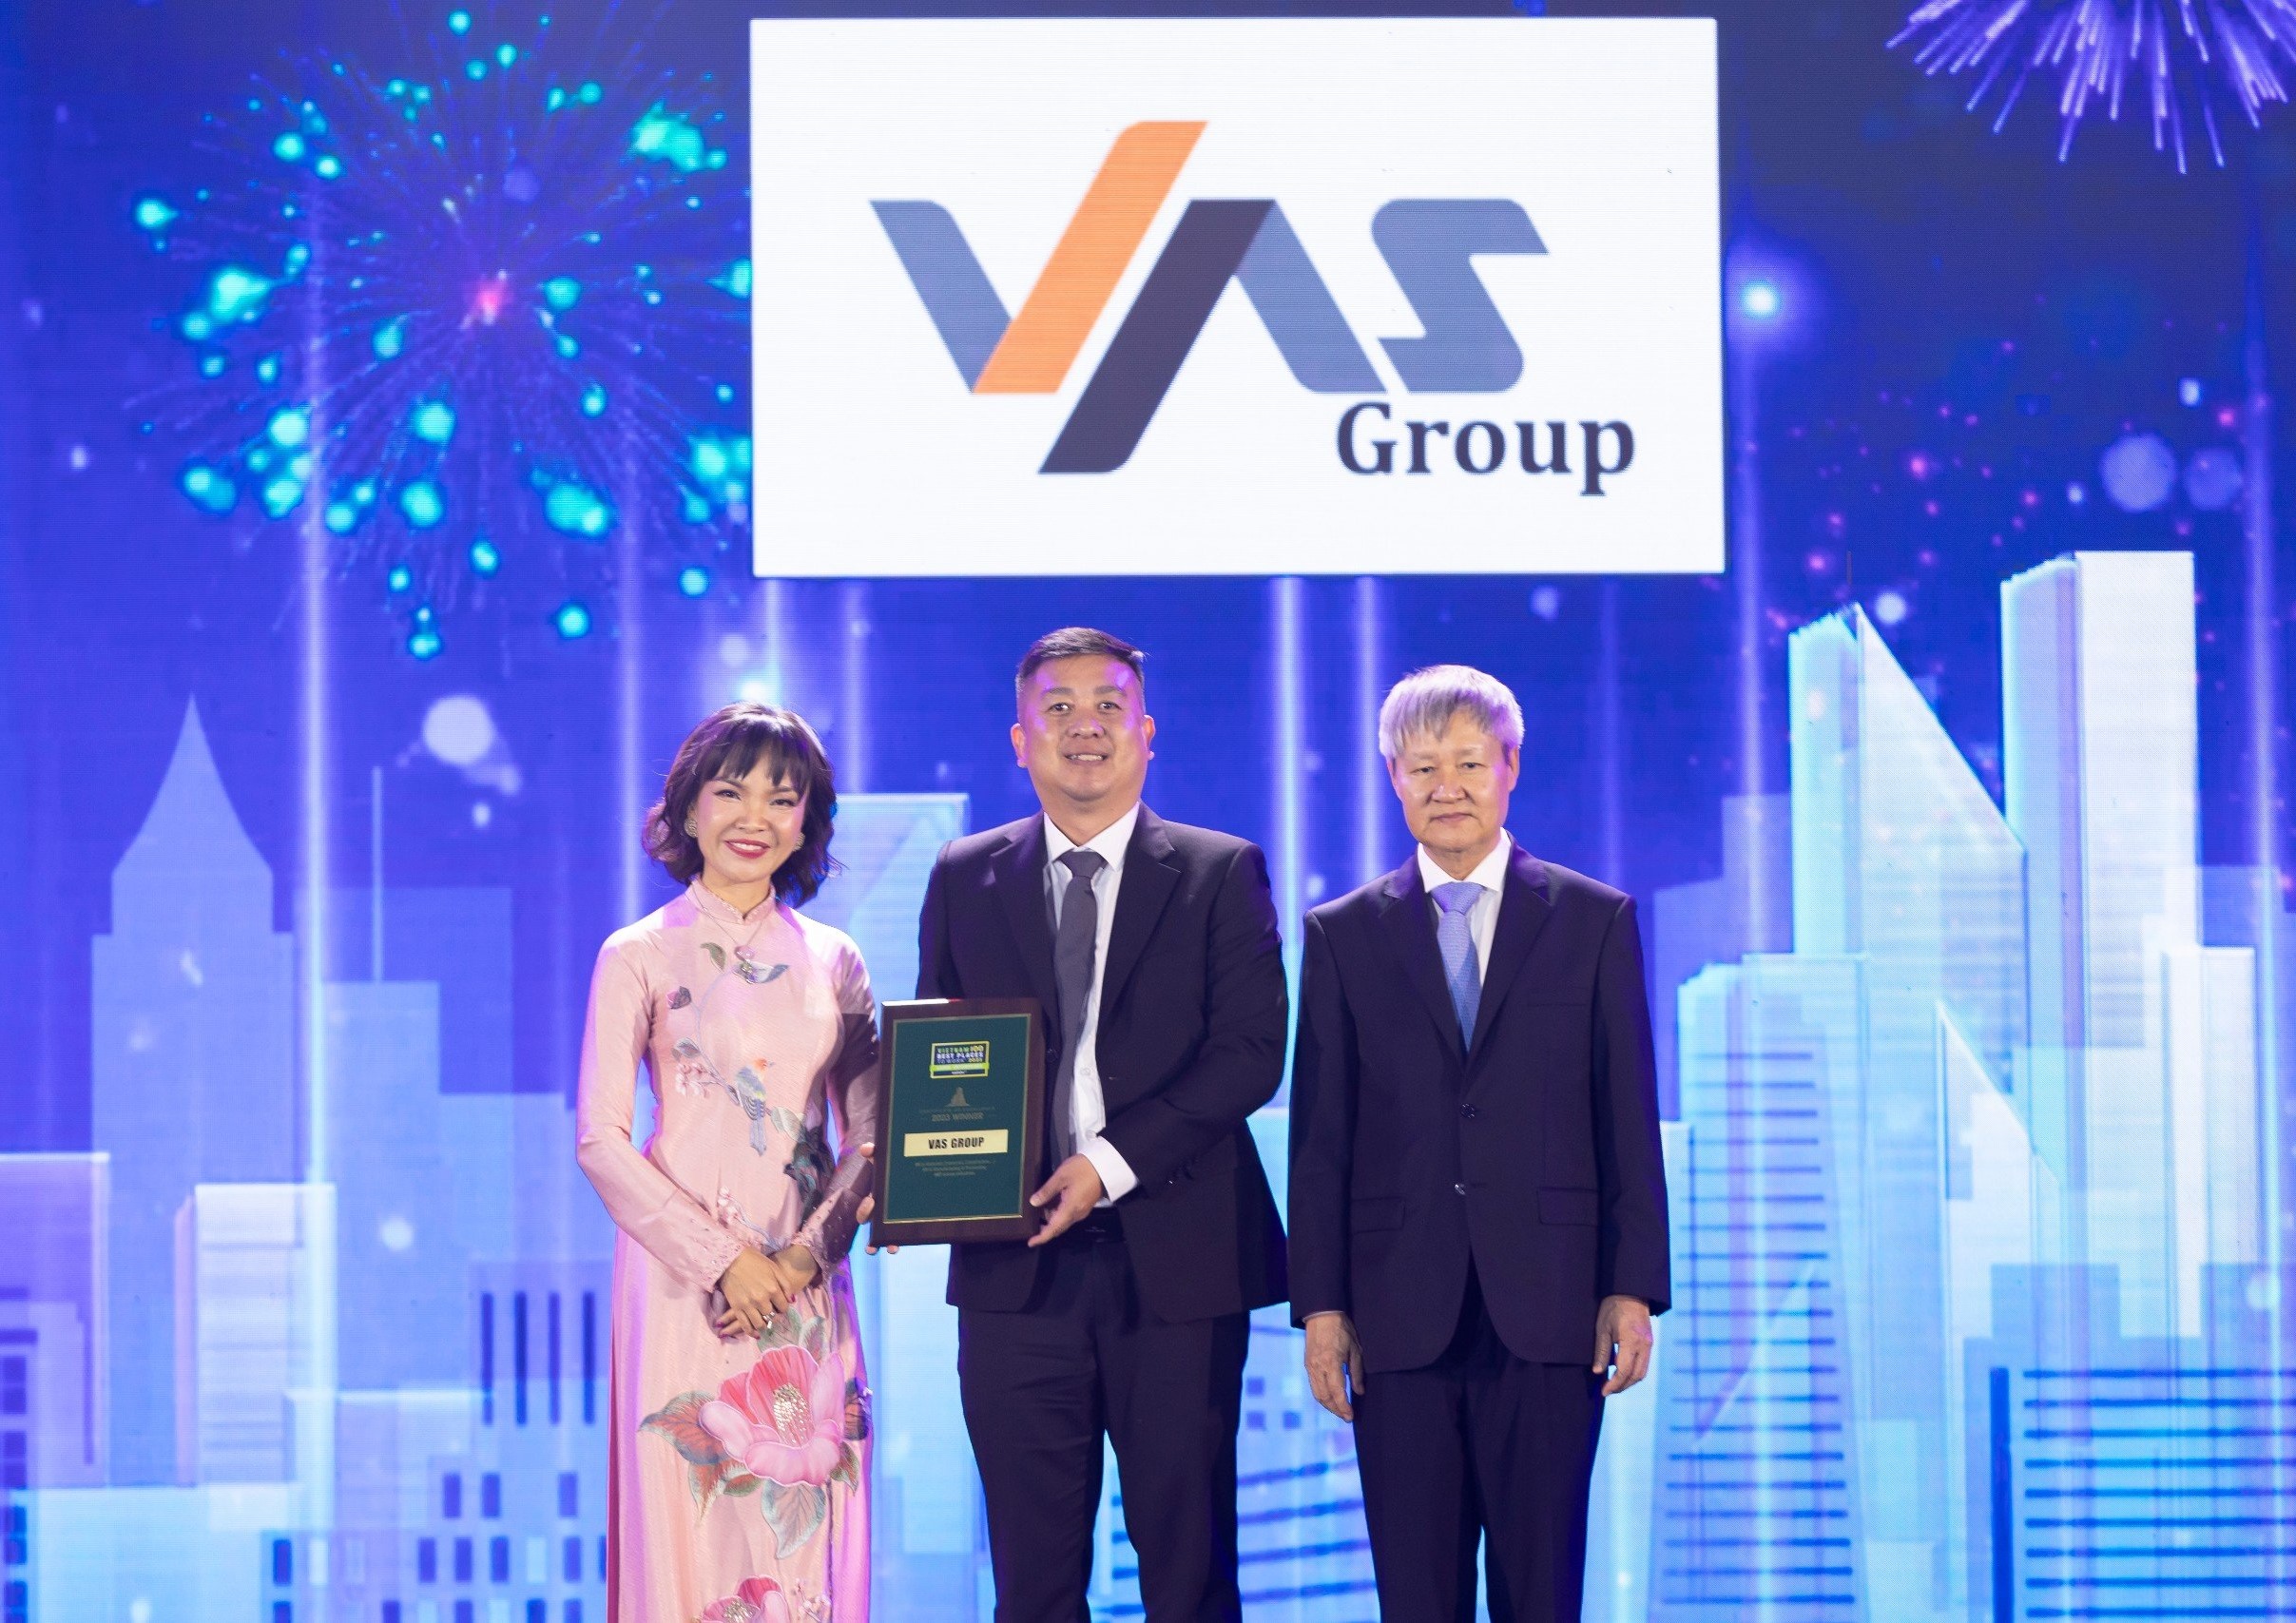 Lấy Nhân làm gốc, Tập đoàn VAS vào “Top 100 Nơi làm việc tốt nhất Việt Nam”